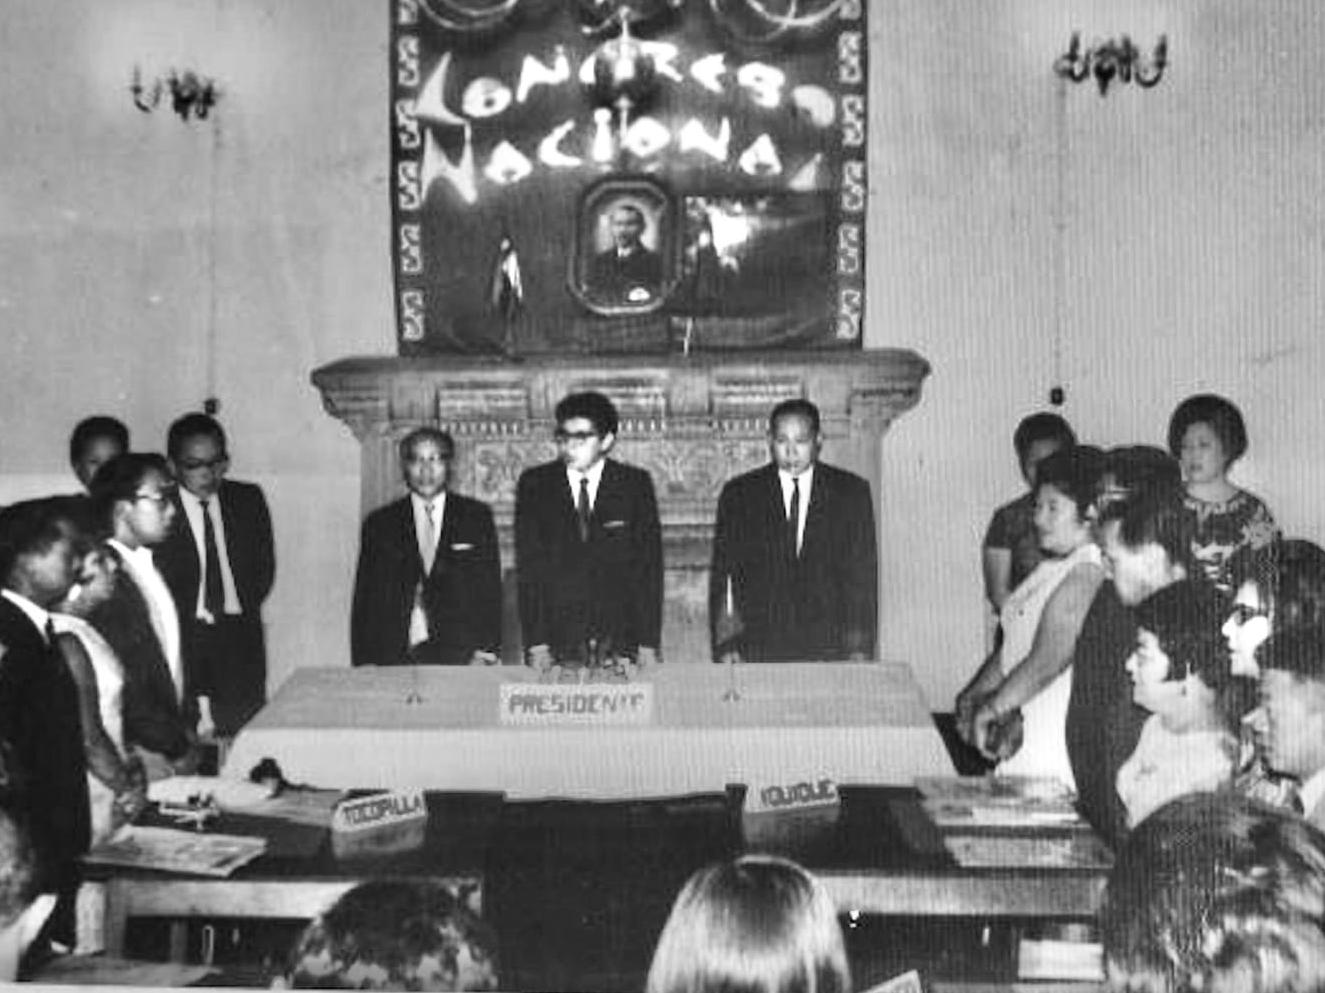 II Congreso de juventud China en Chile, Santiago. c.1964